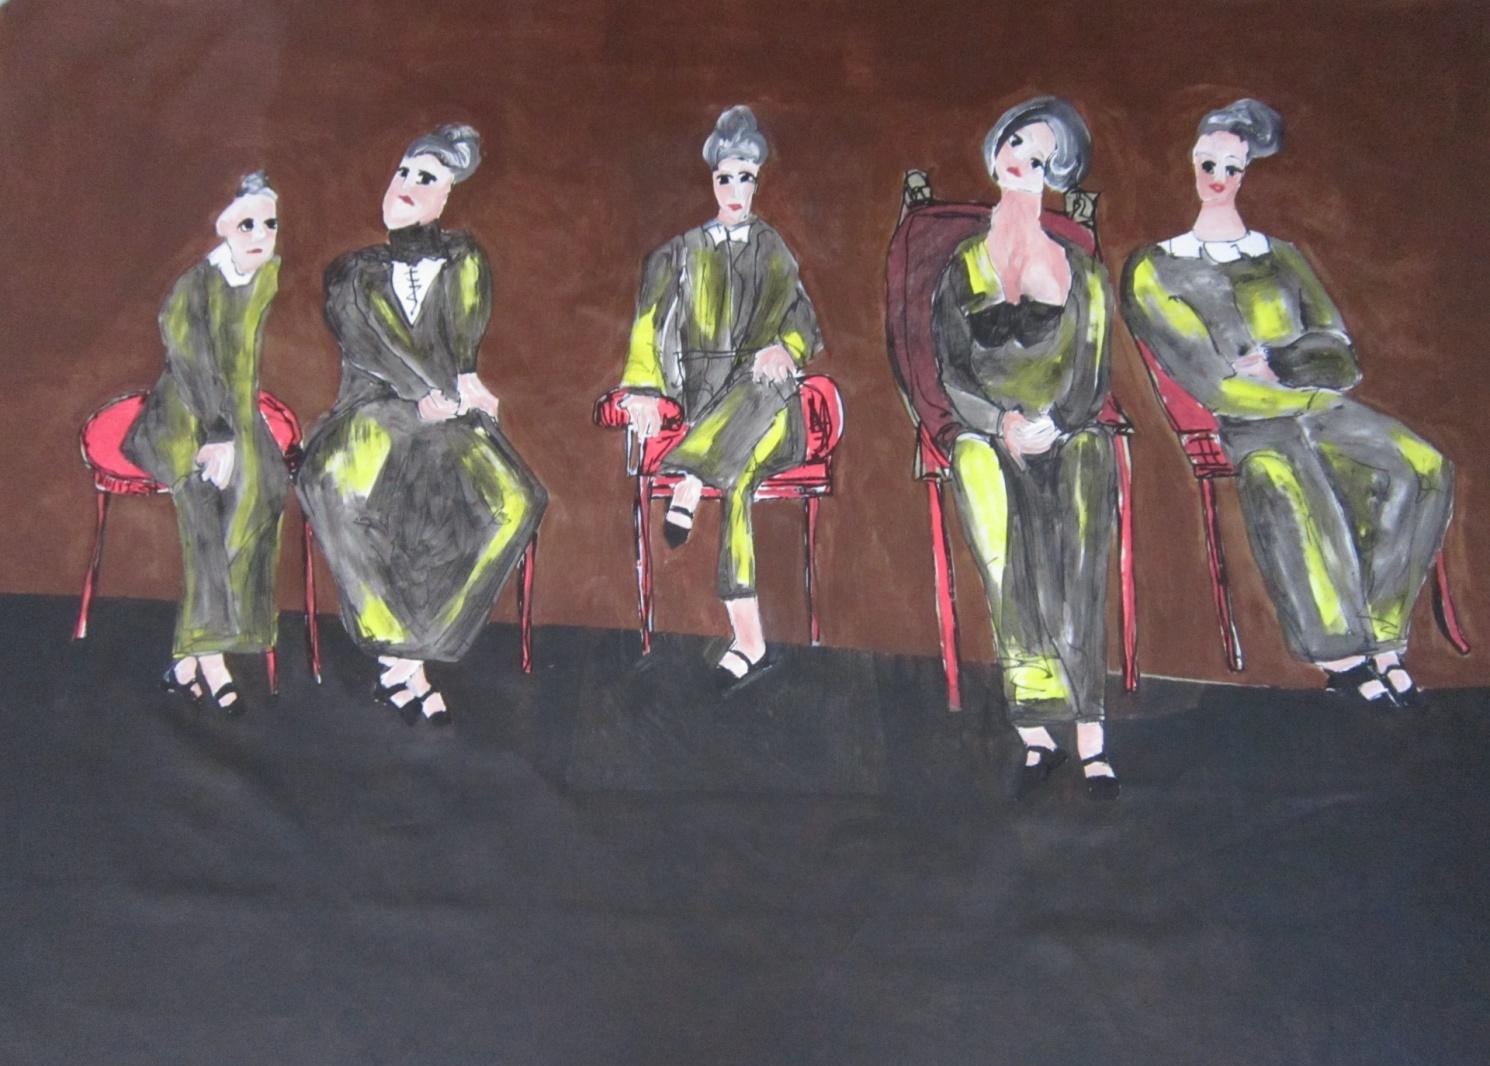 Comissão de mulheres, 2014. Acrílica sobre tela, 152x103cm.